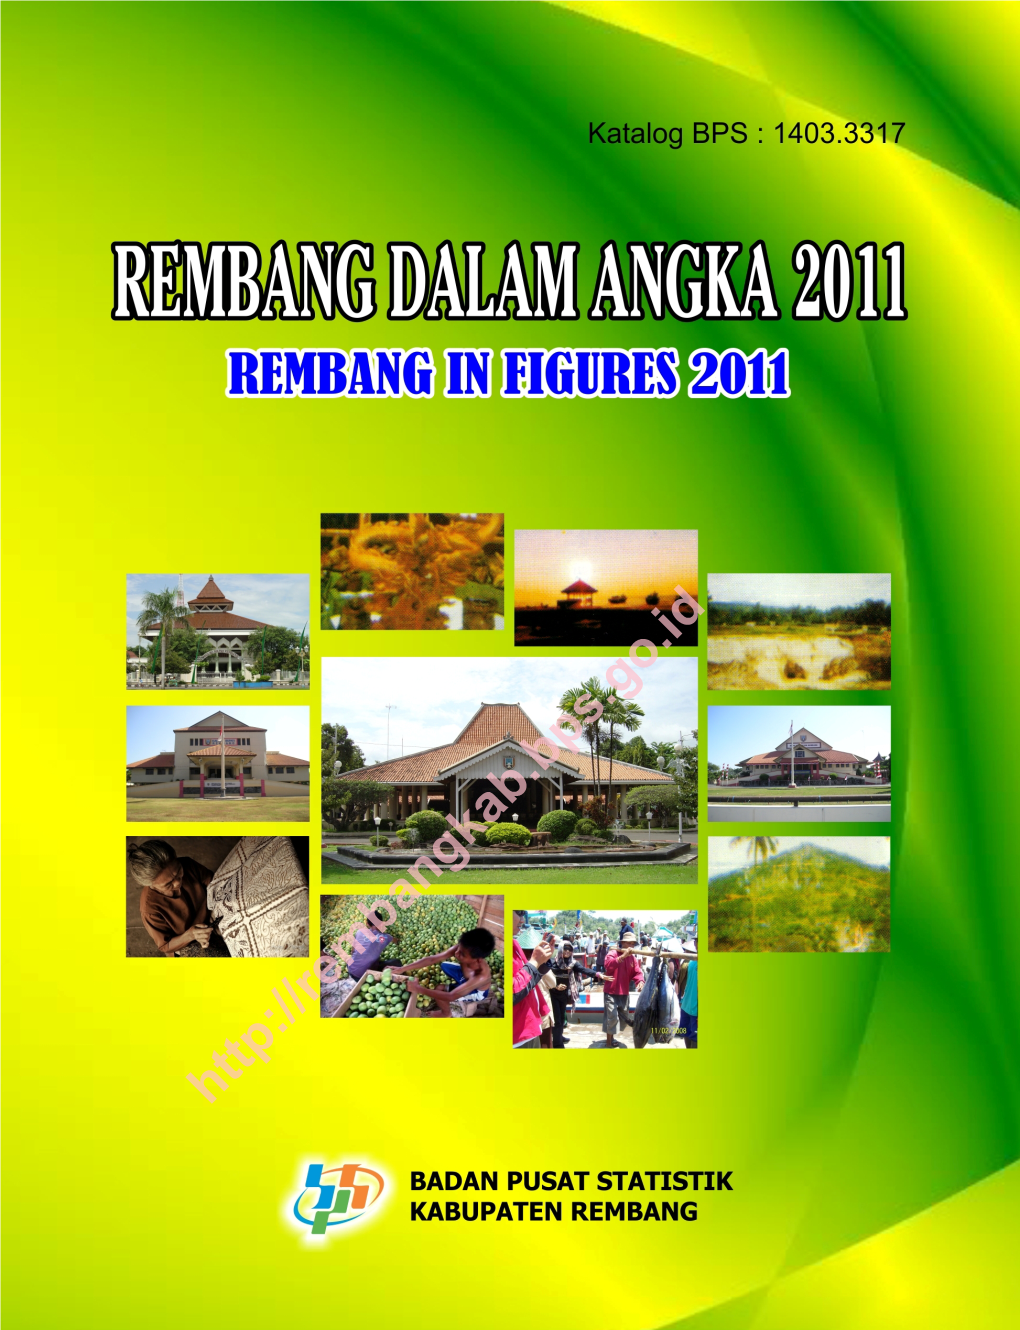 REMBANG DALAM ANGKA TAHUN 2011 Rembang in Figures 2011